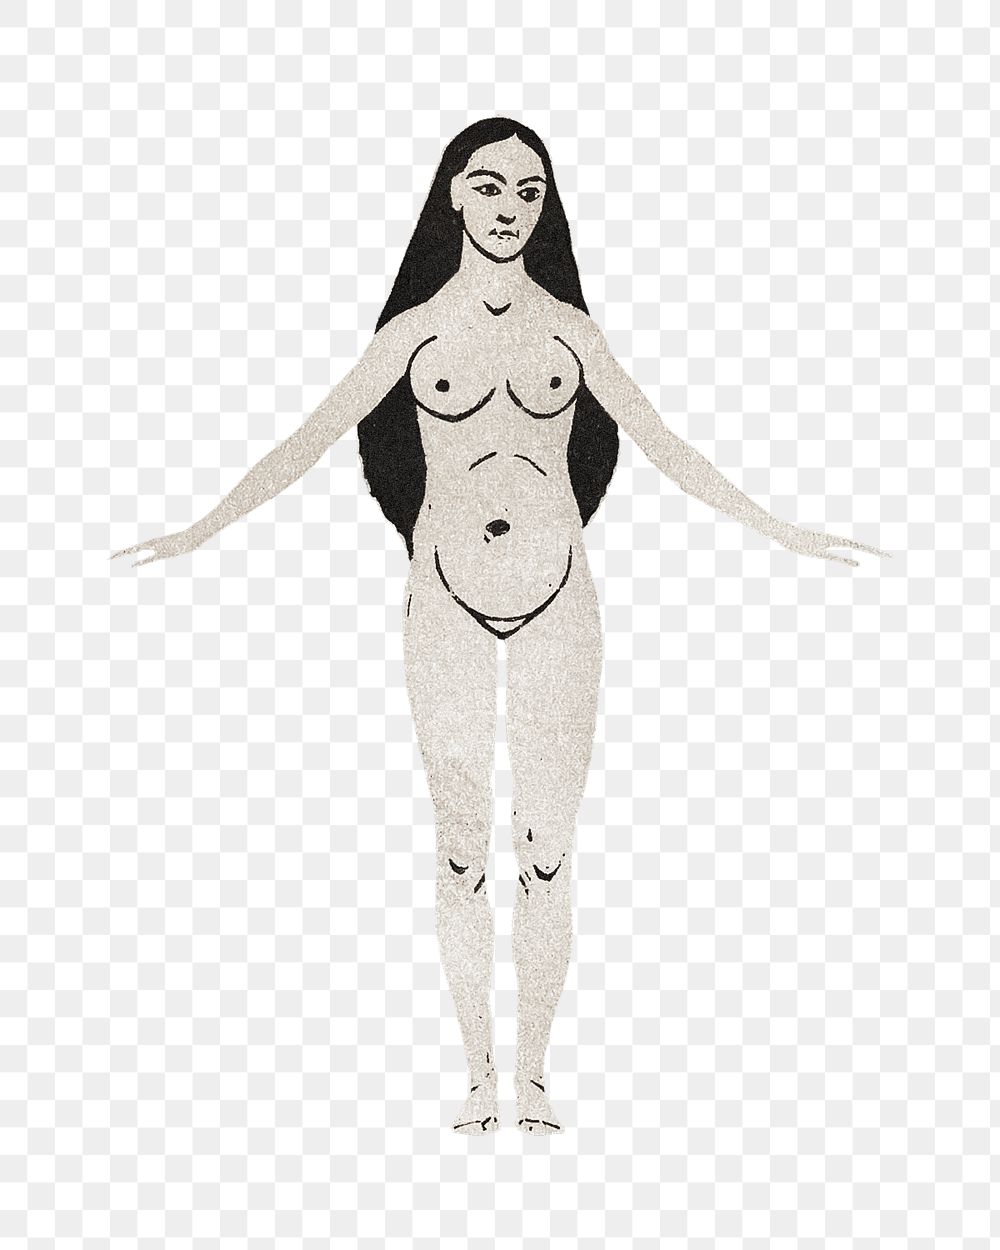 Png naked woman sticker, vintage illustration, transparent background